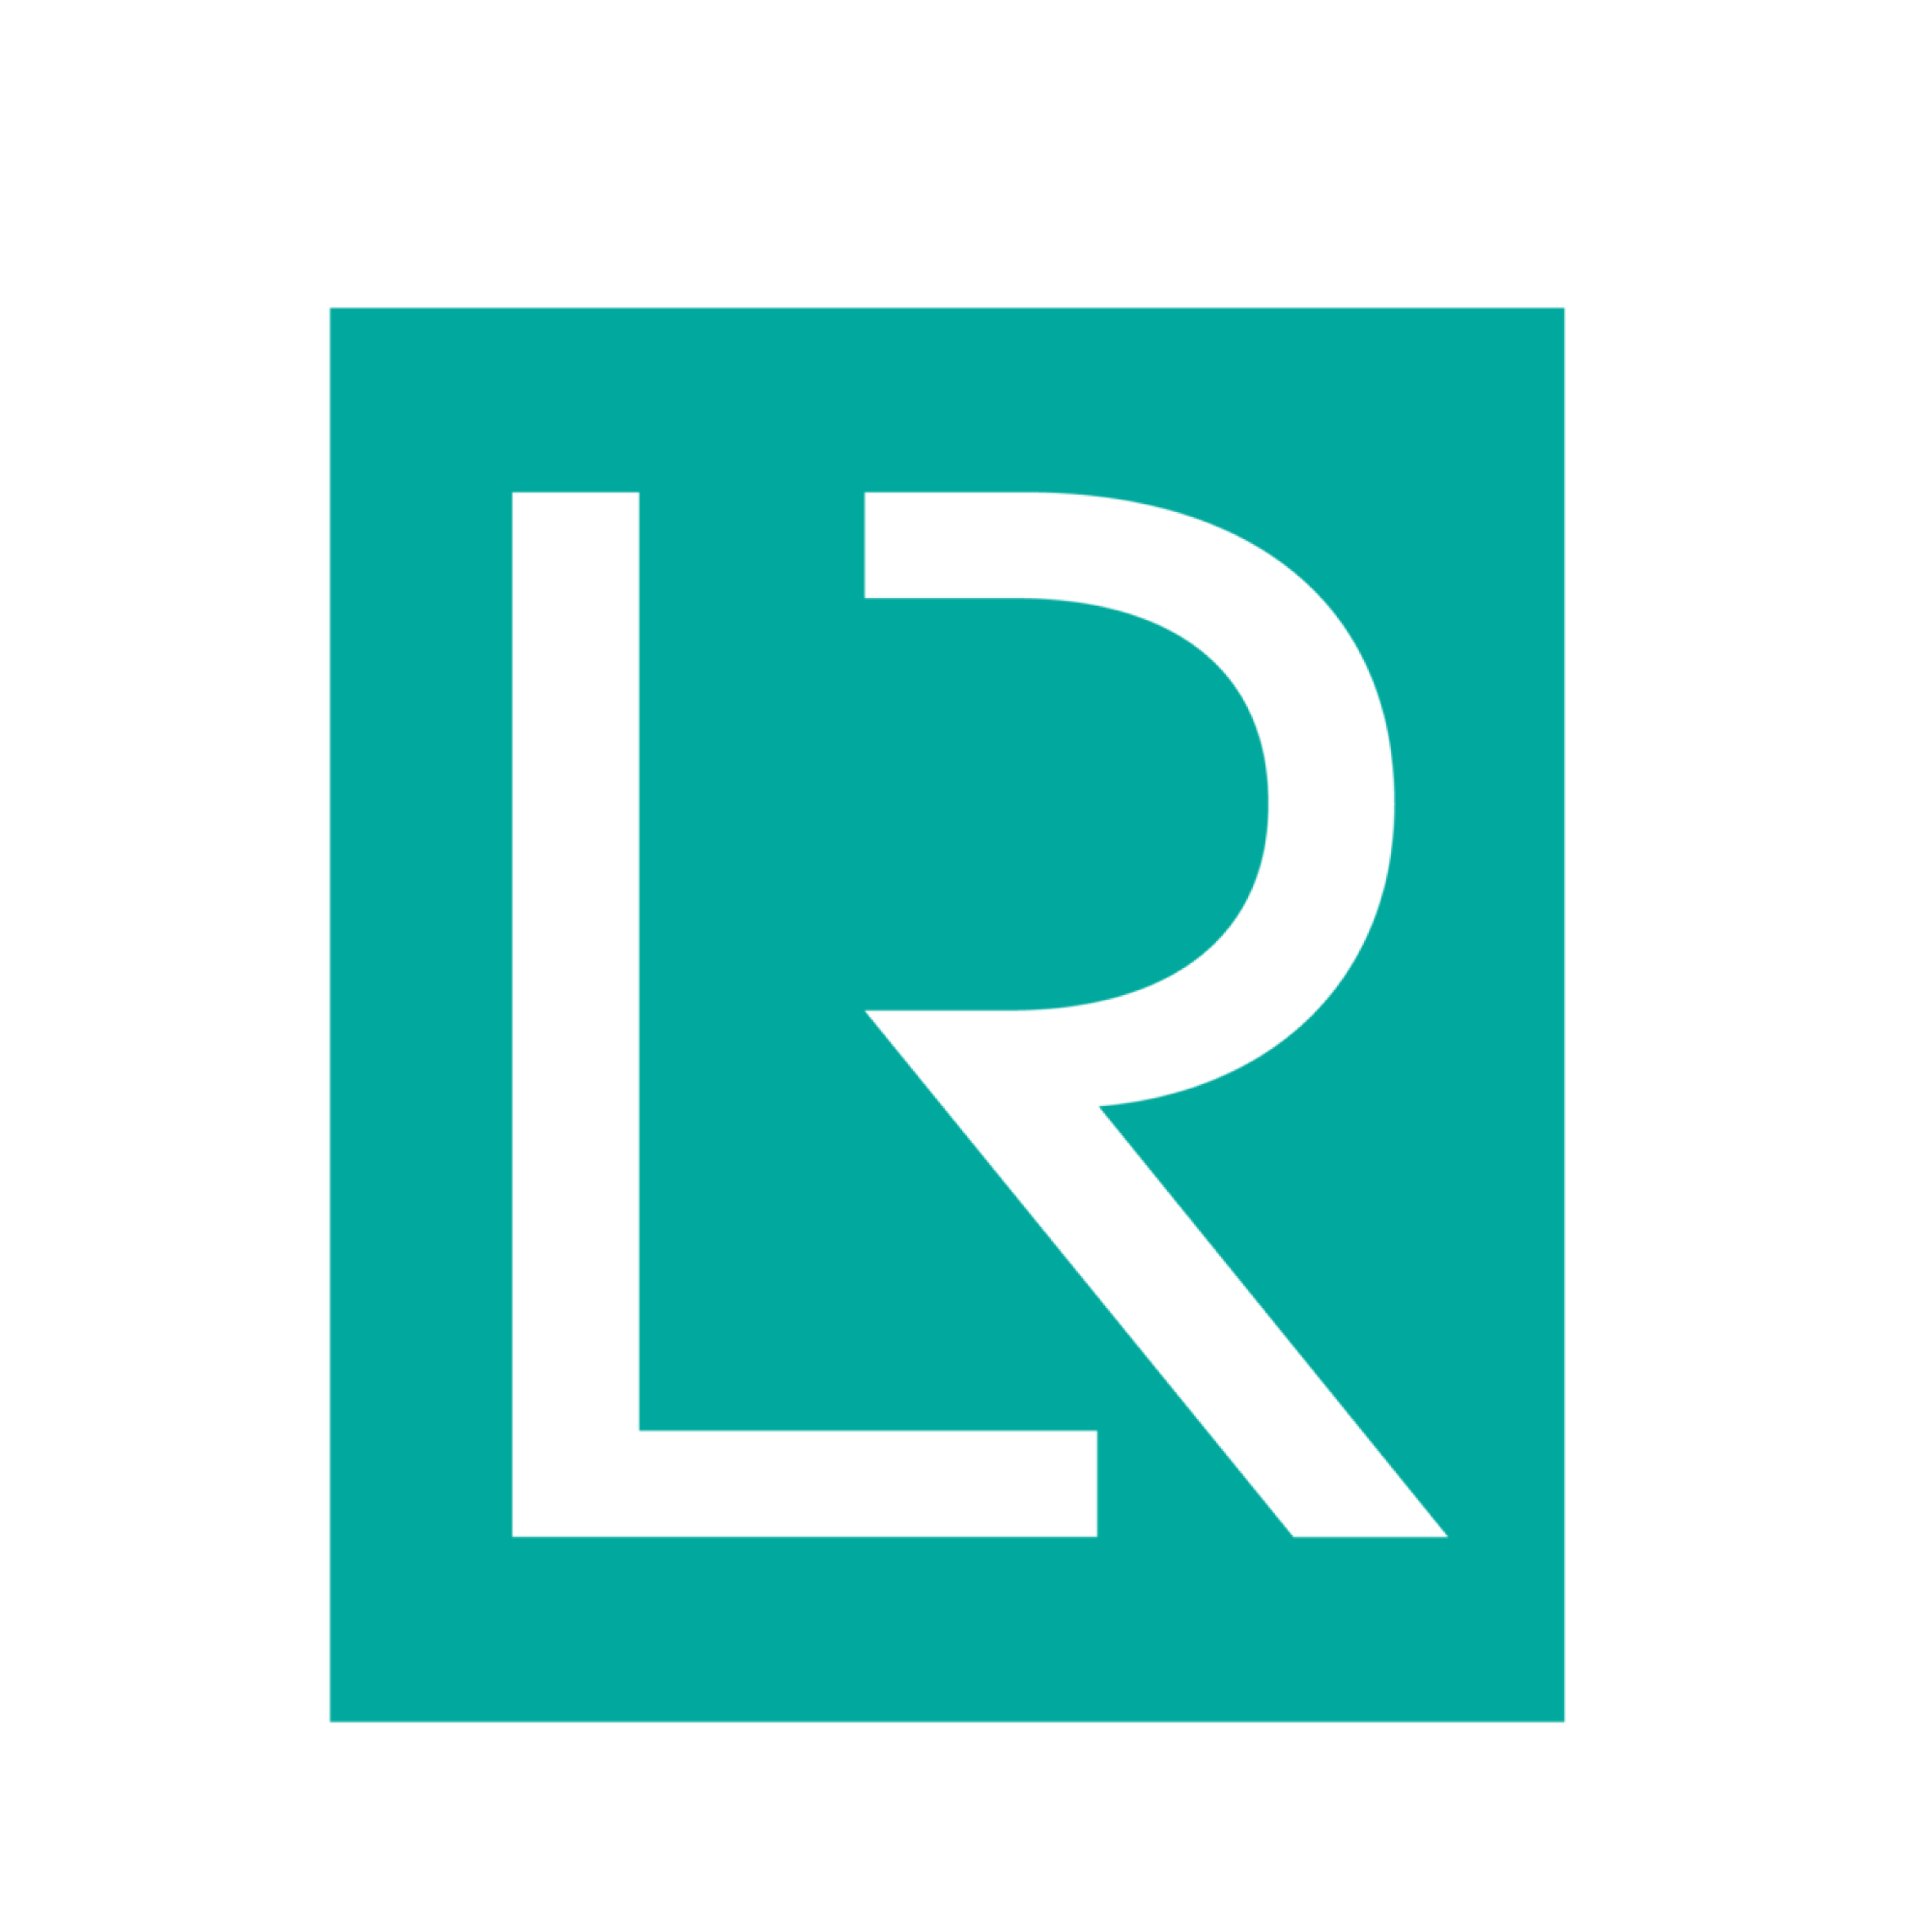 Das Bild zeigt das Logo der Schiffbauklassifikationsgesellschaft LR